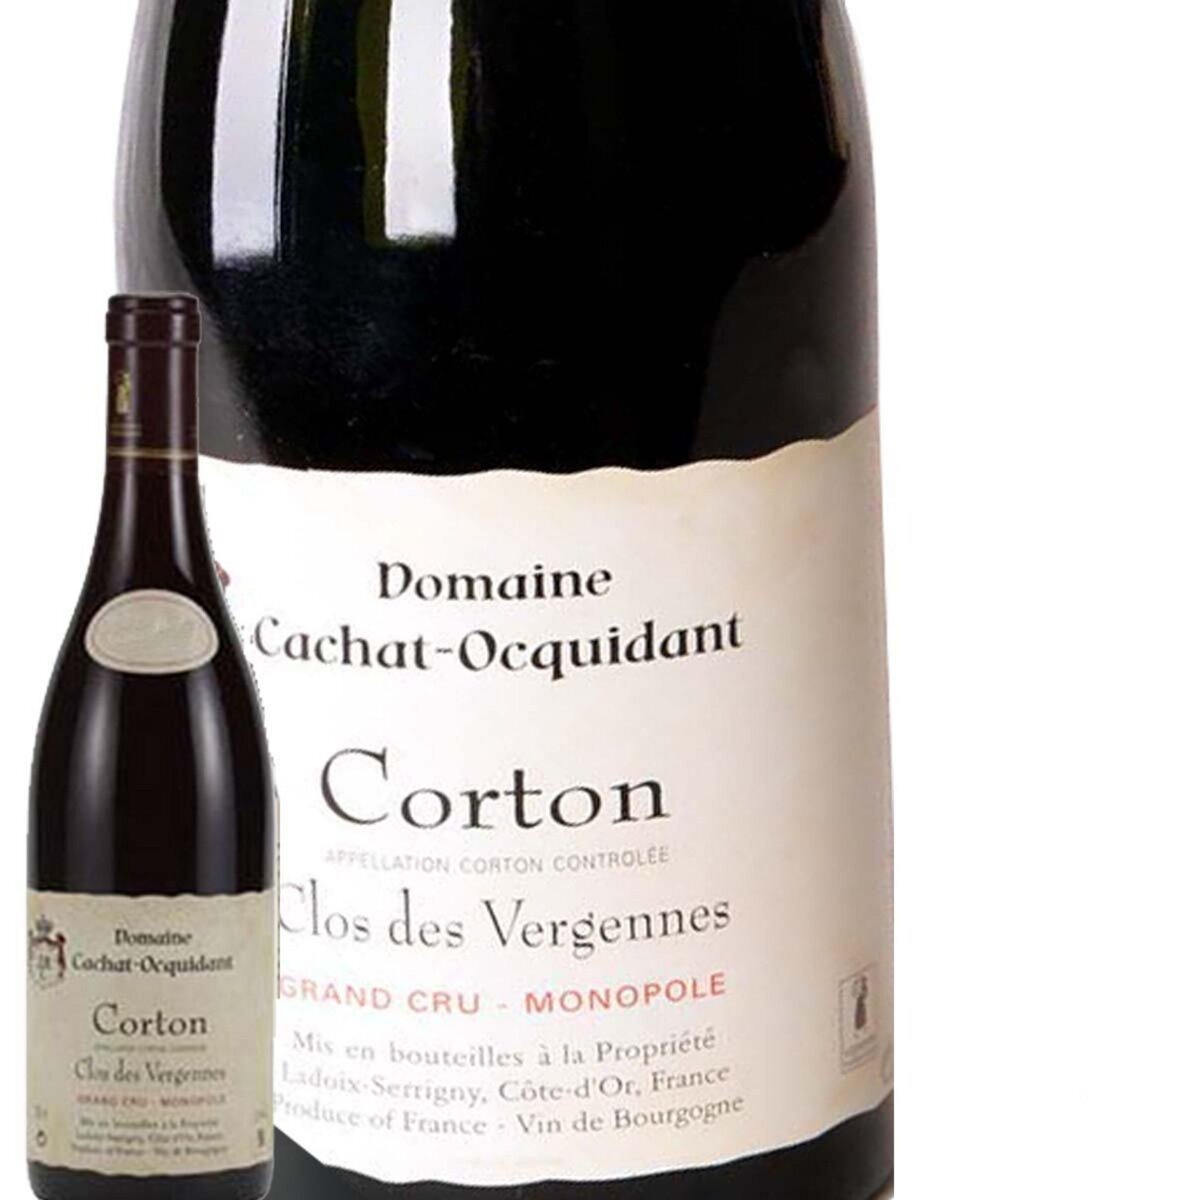 Domaine Cachat Ocquidant Corton Clos des Vergennes Monopole Rouge 2013